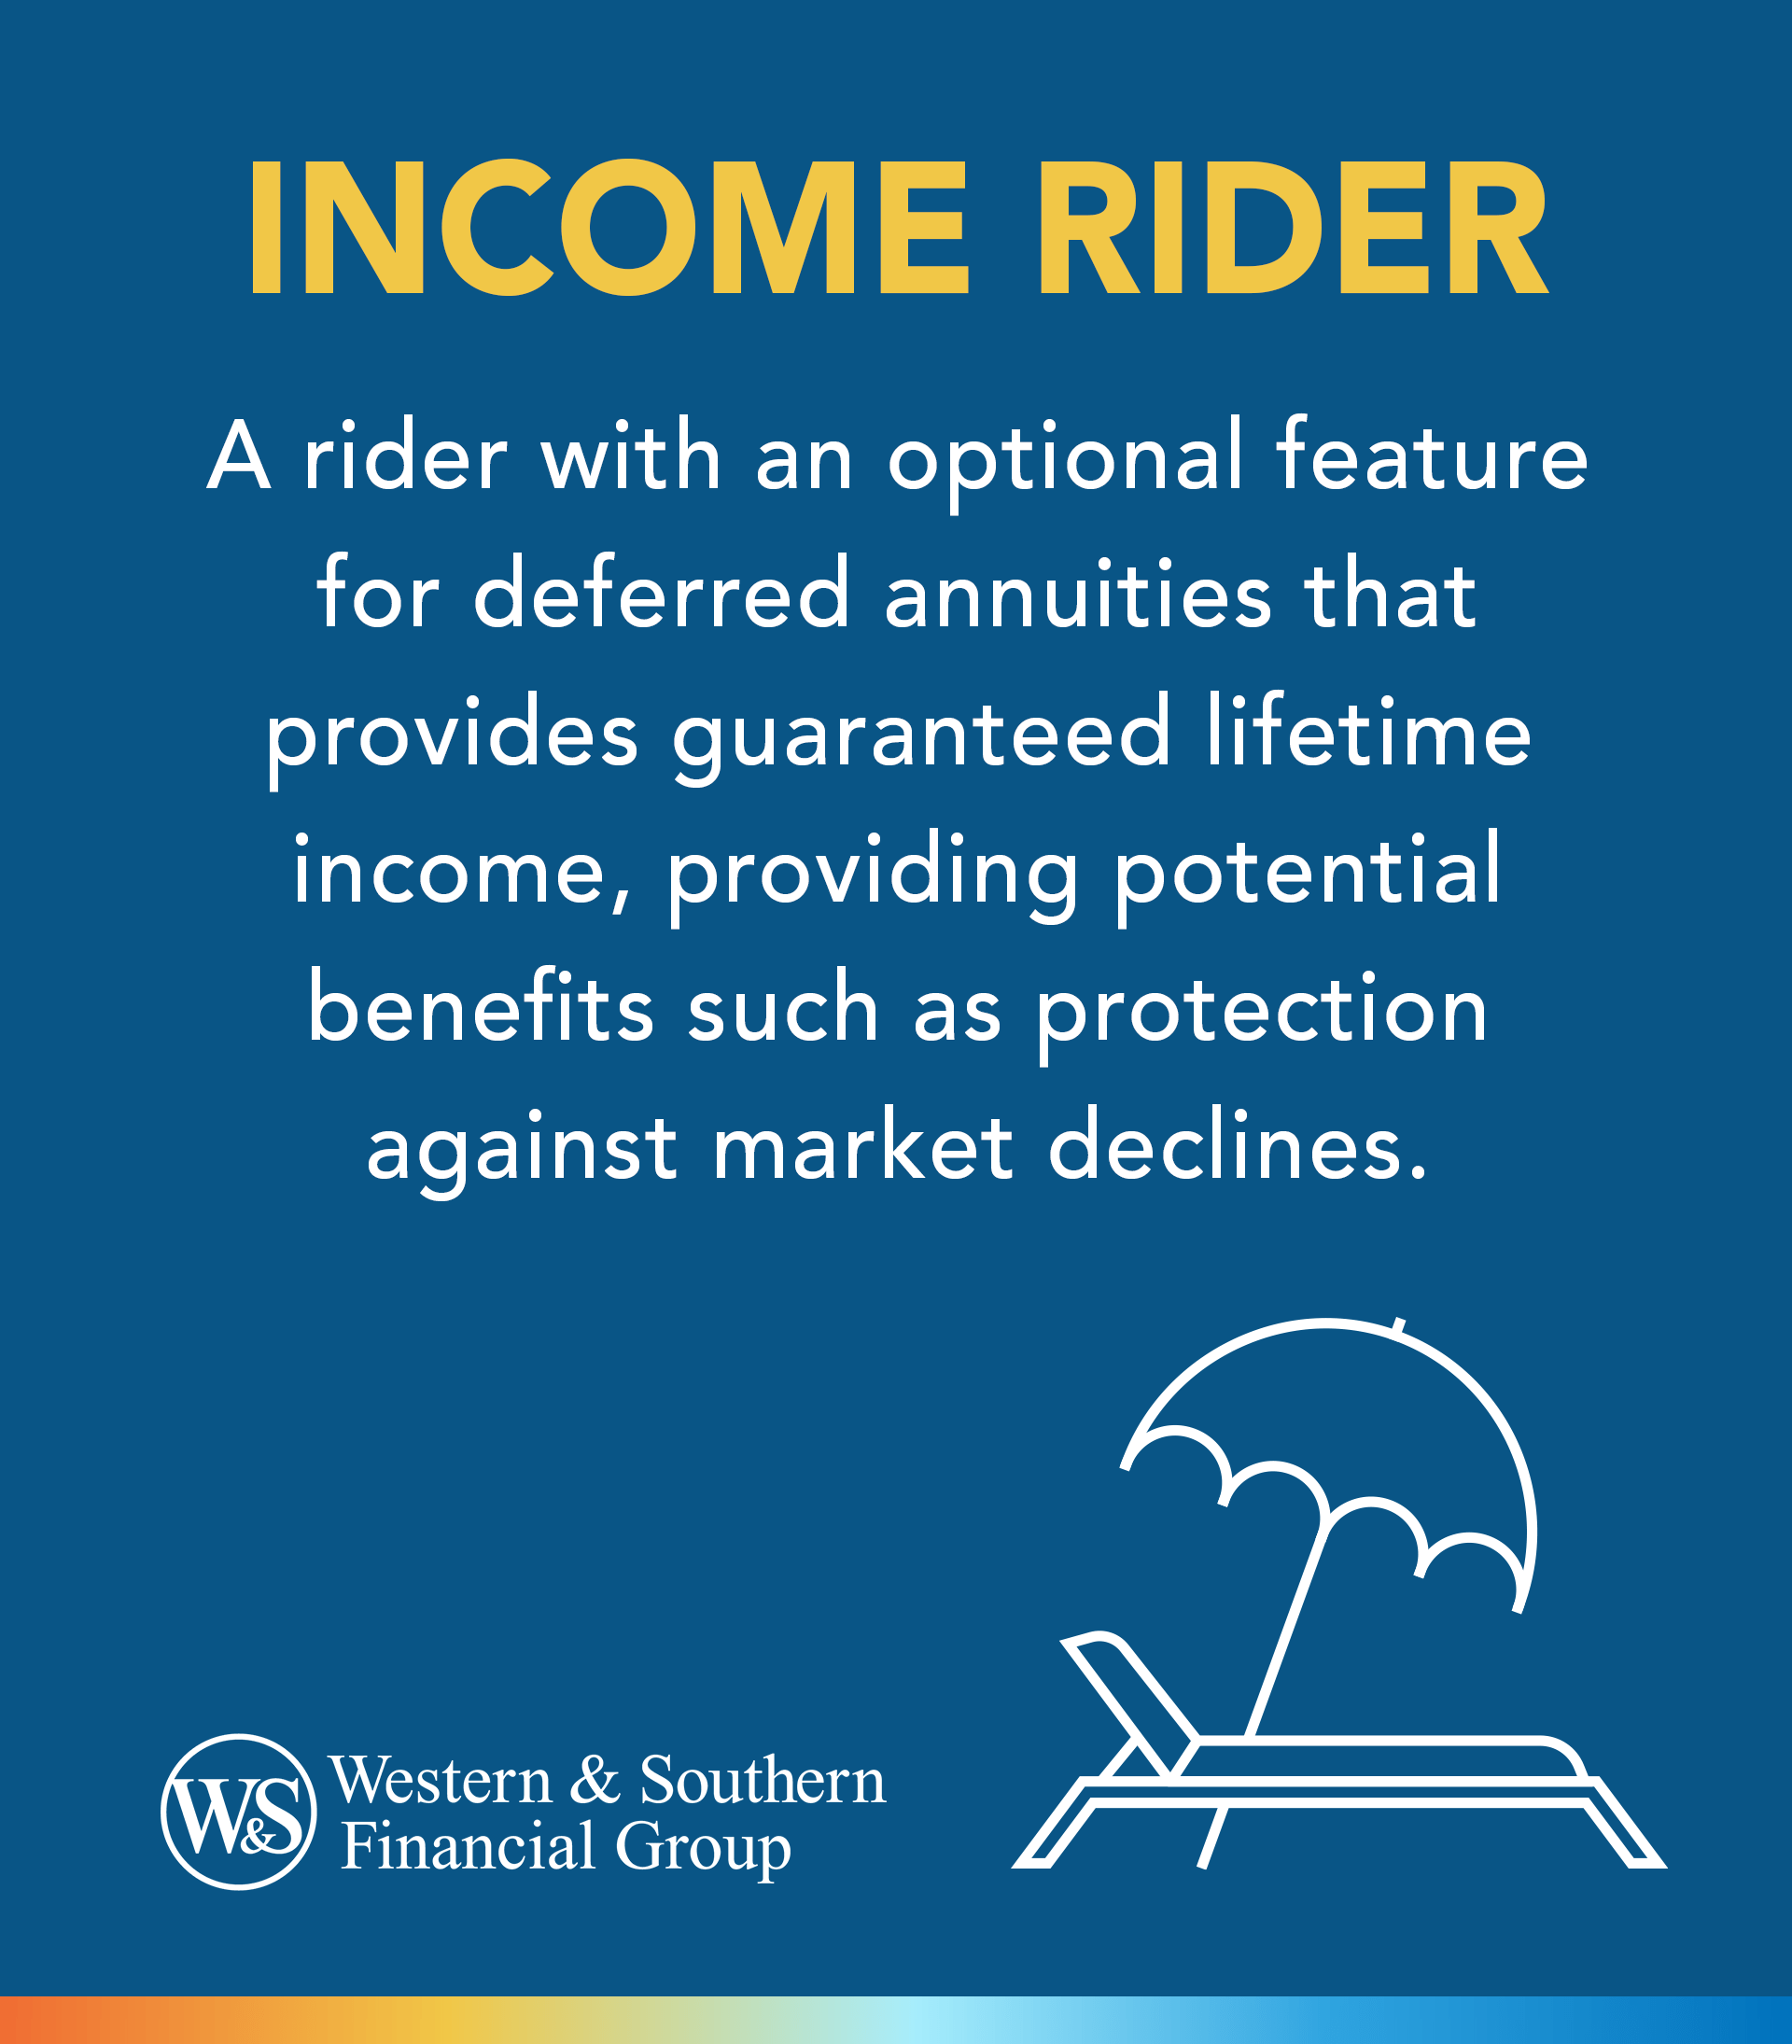 Income Rider definition